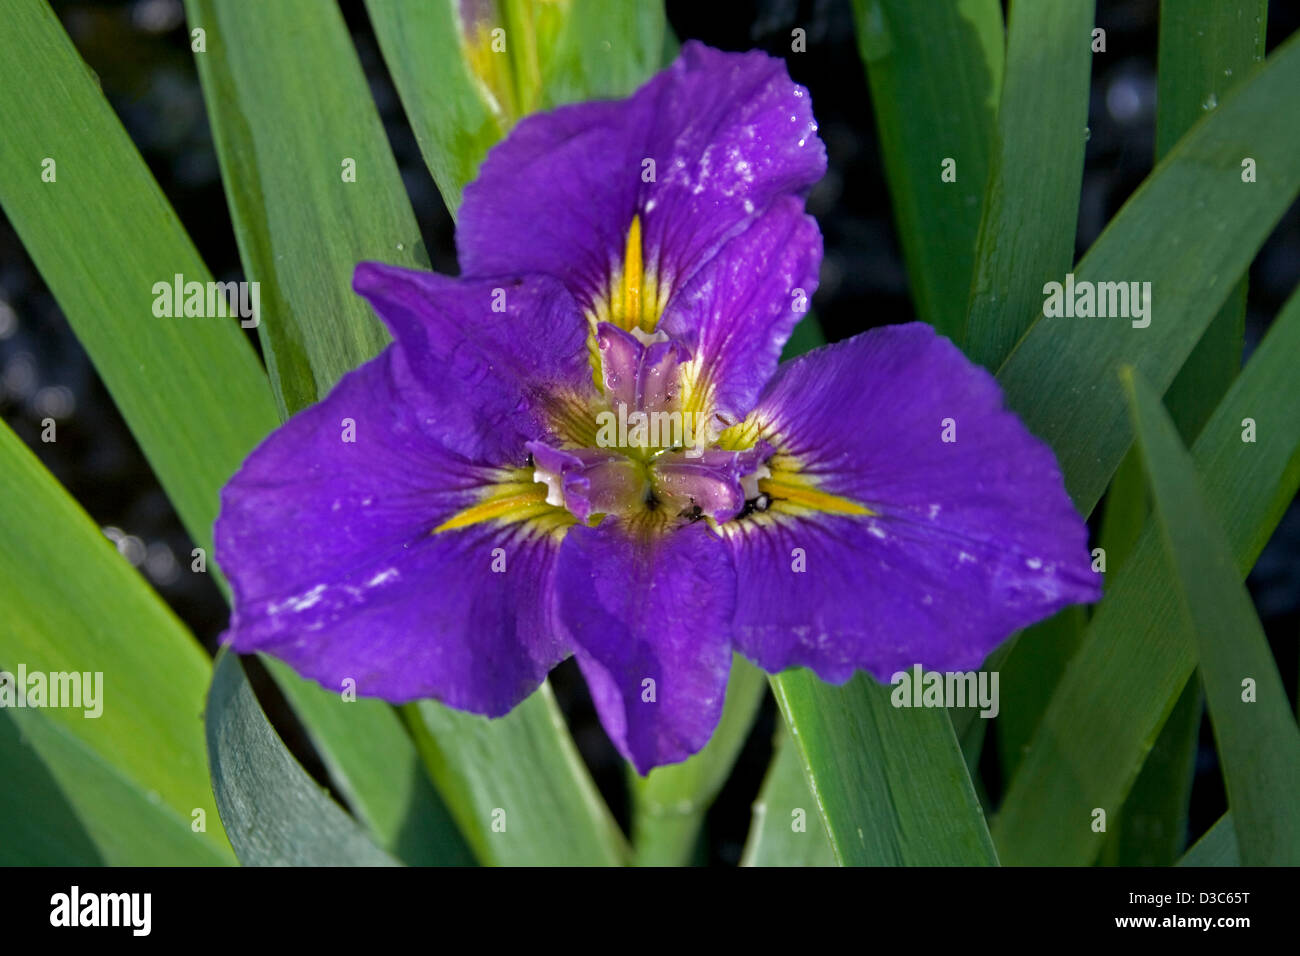 Spettacolare Deep Purple fiore con gola gialla - Louisiana iris "Geisha occhi' - con blue /foglie verdi Foto Stock